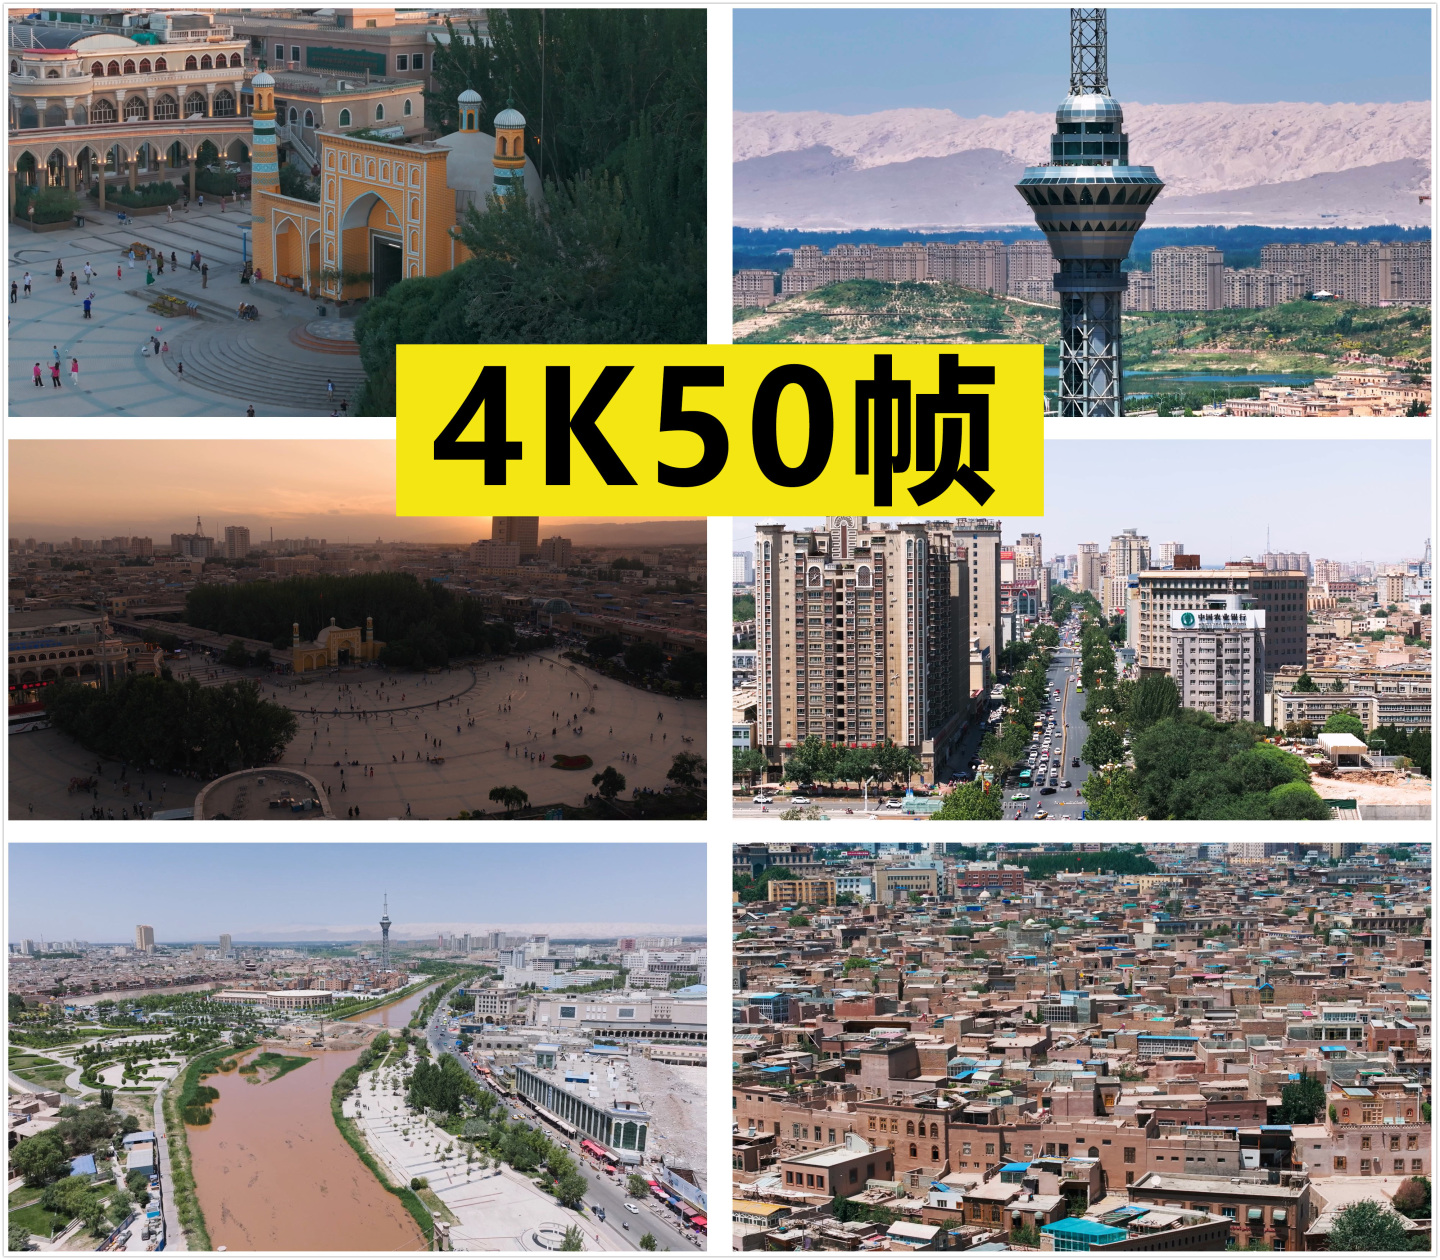 喀什古城 清真寺 航拍素材4K50